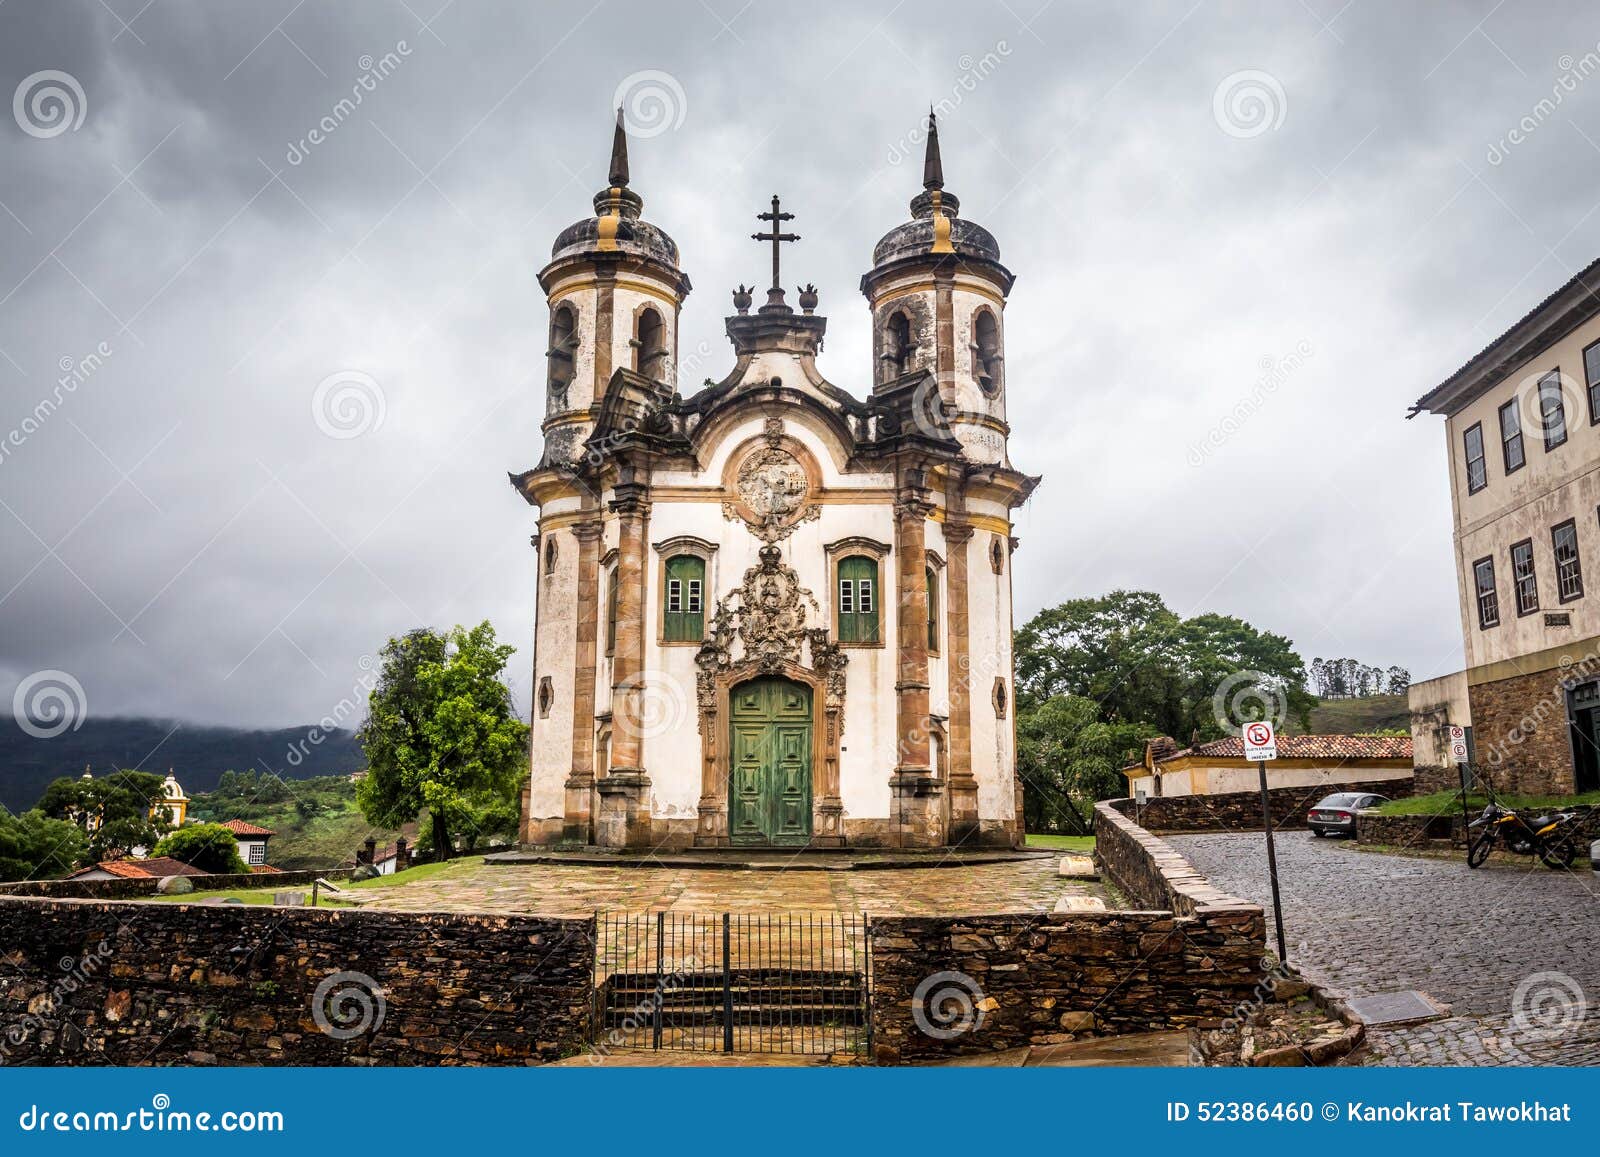 the igreja de sao francisco de assis